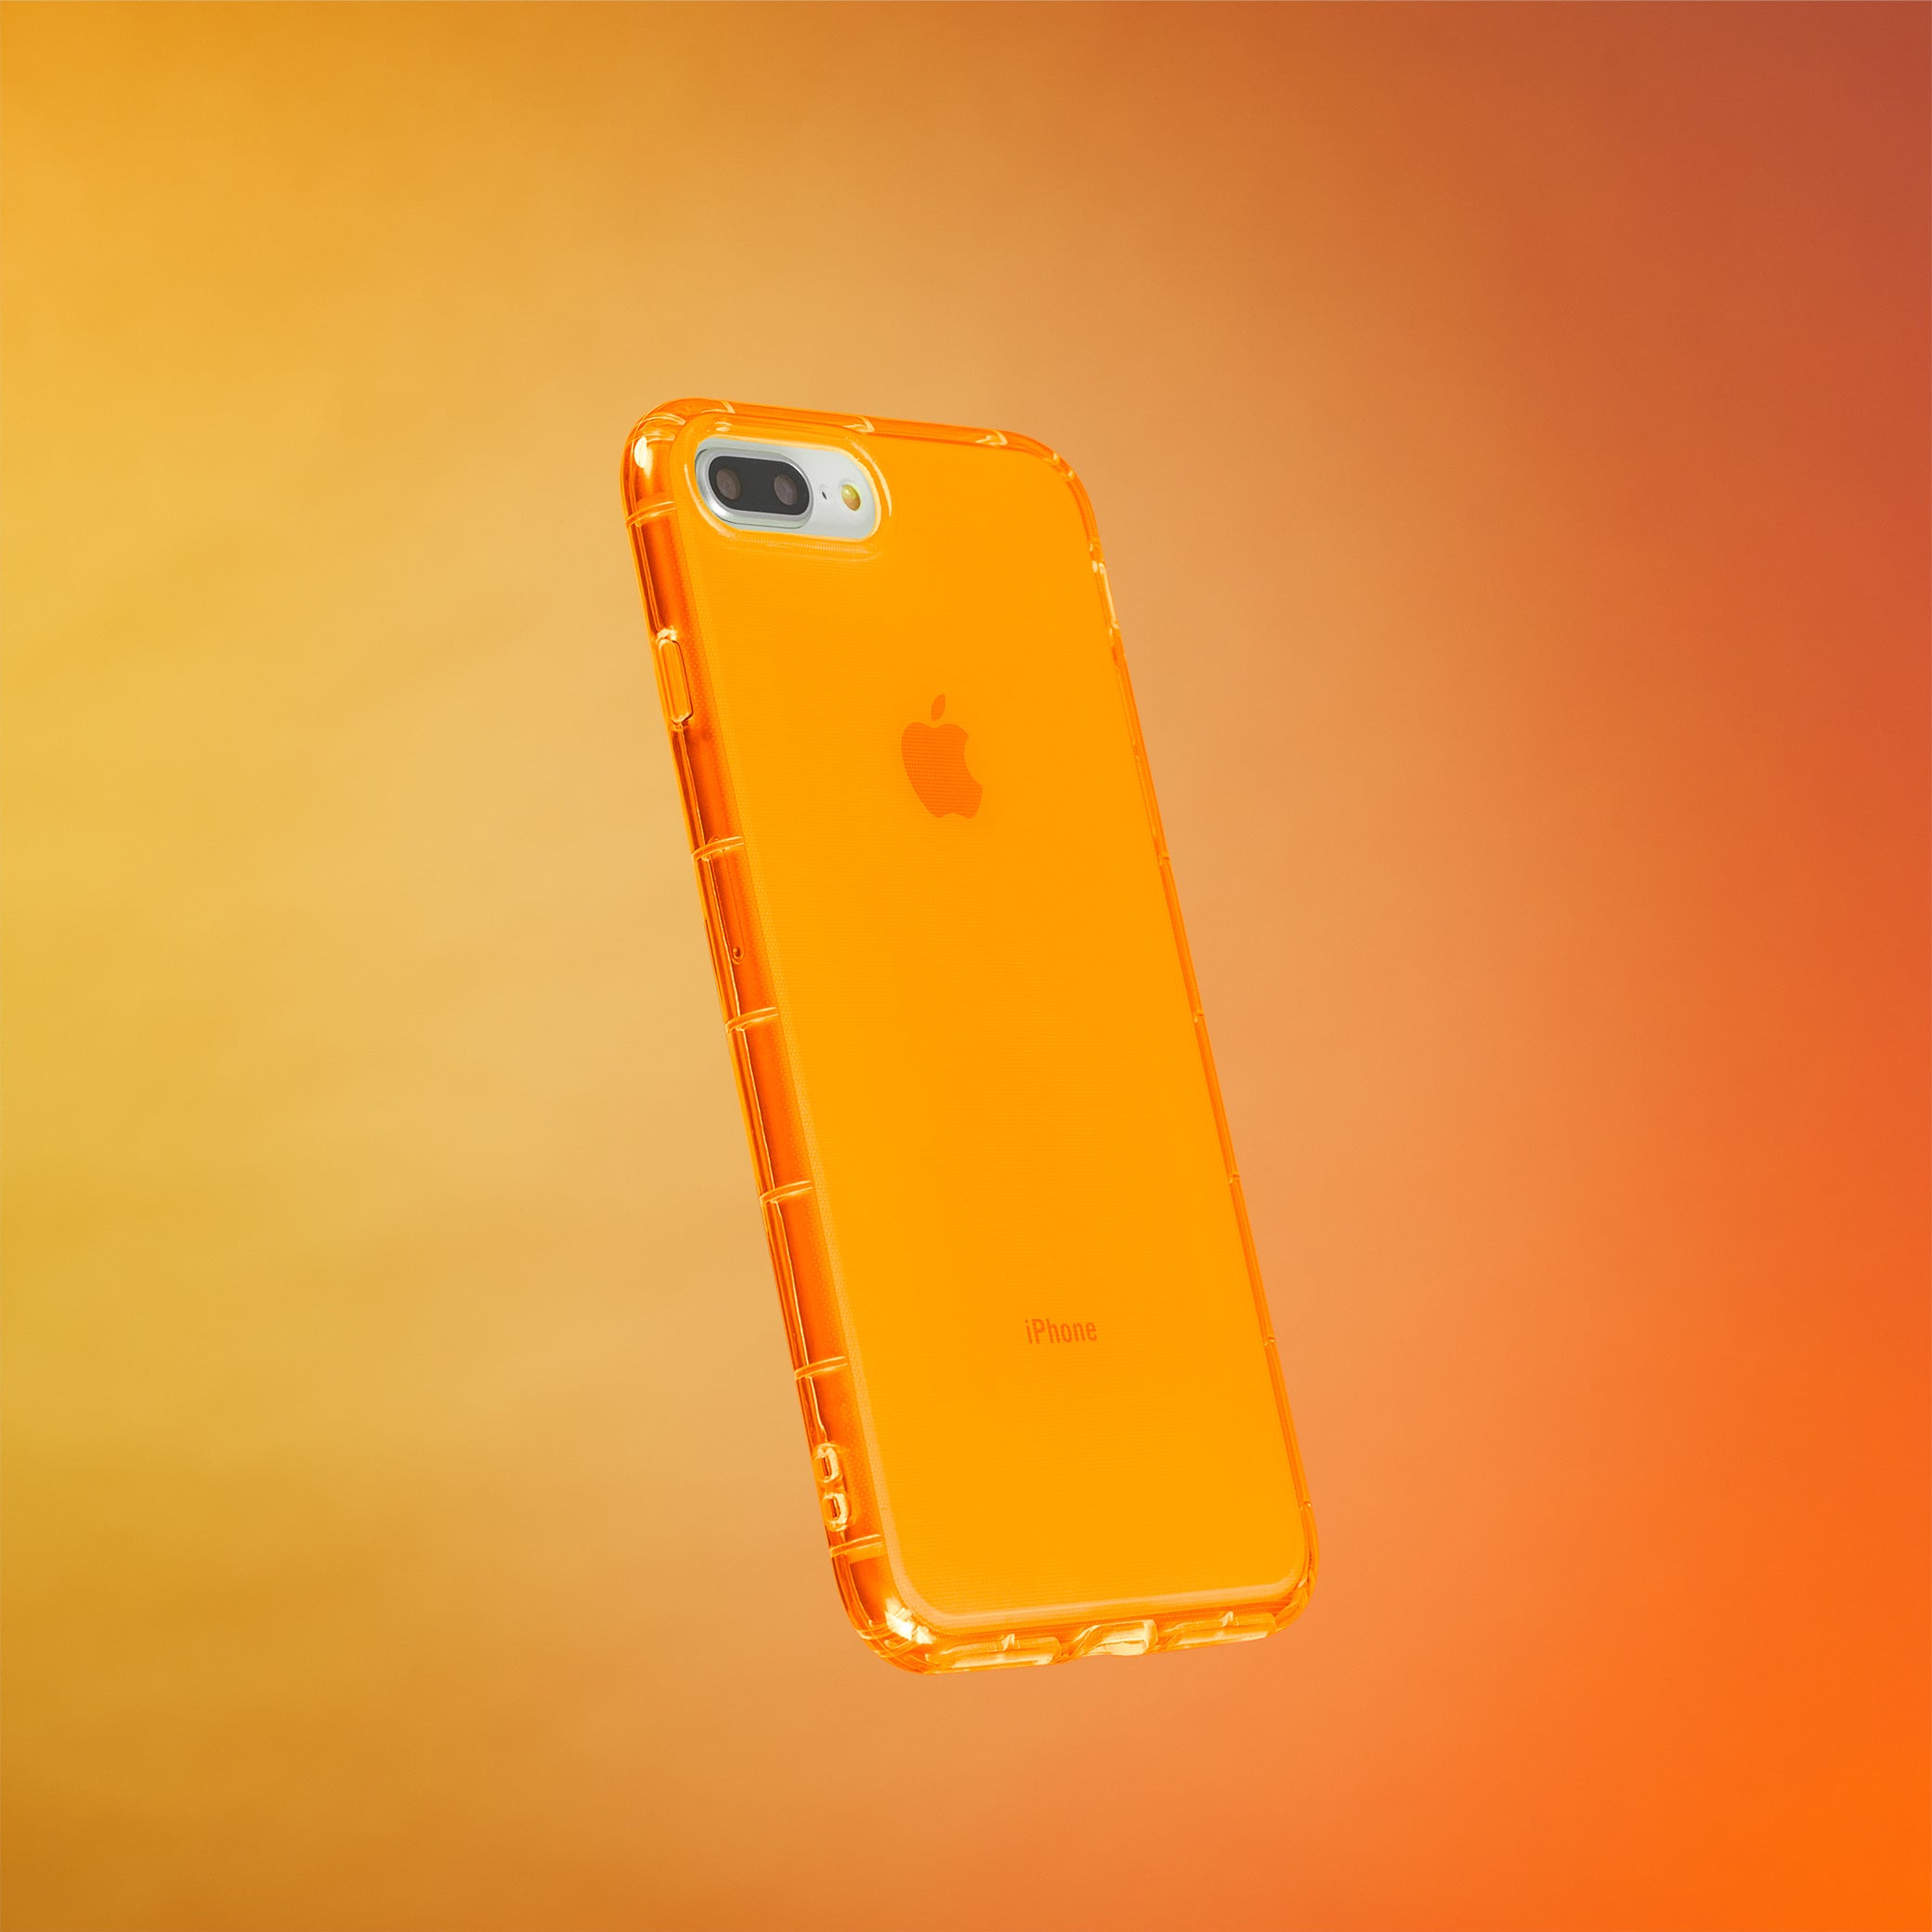 Highlighter Case for iPhone 8 Plus & iPhone 7 Plus - Intense Bright Orange